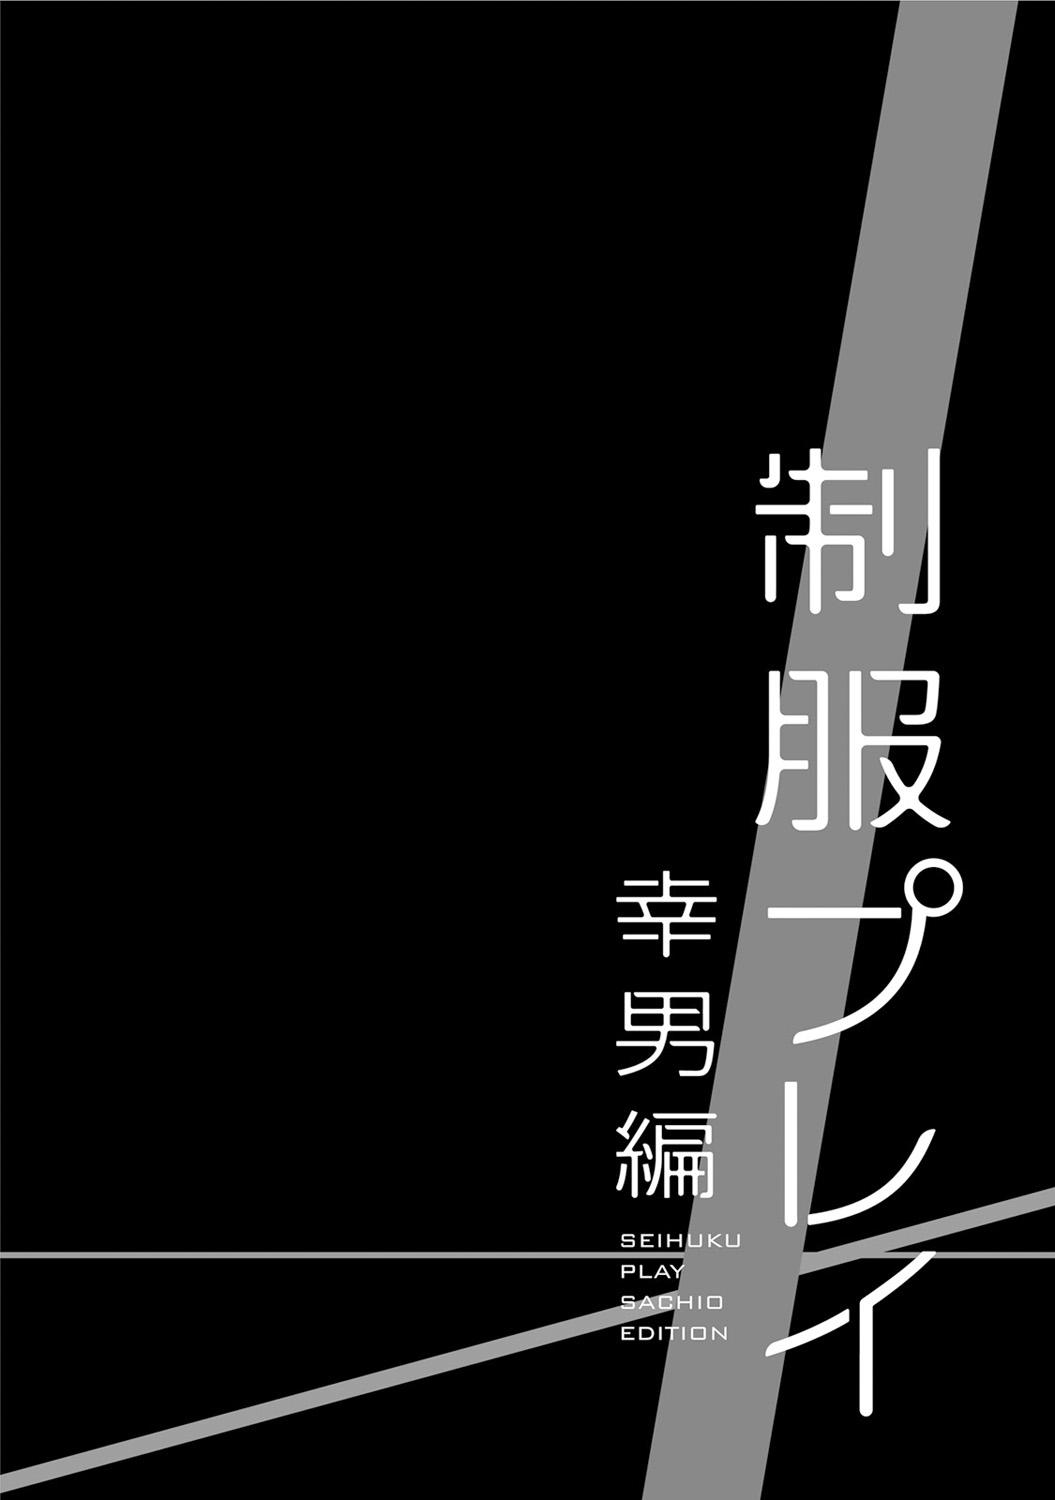 Seihuku Play Sachio Edition 179